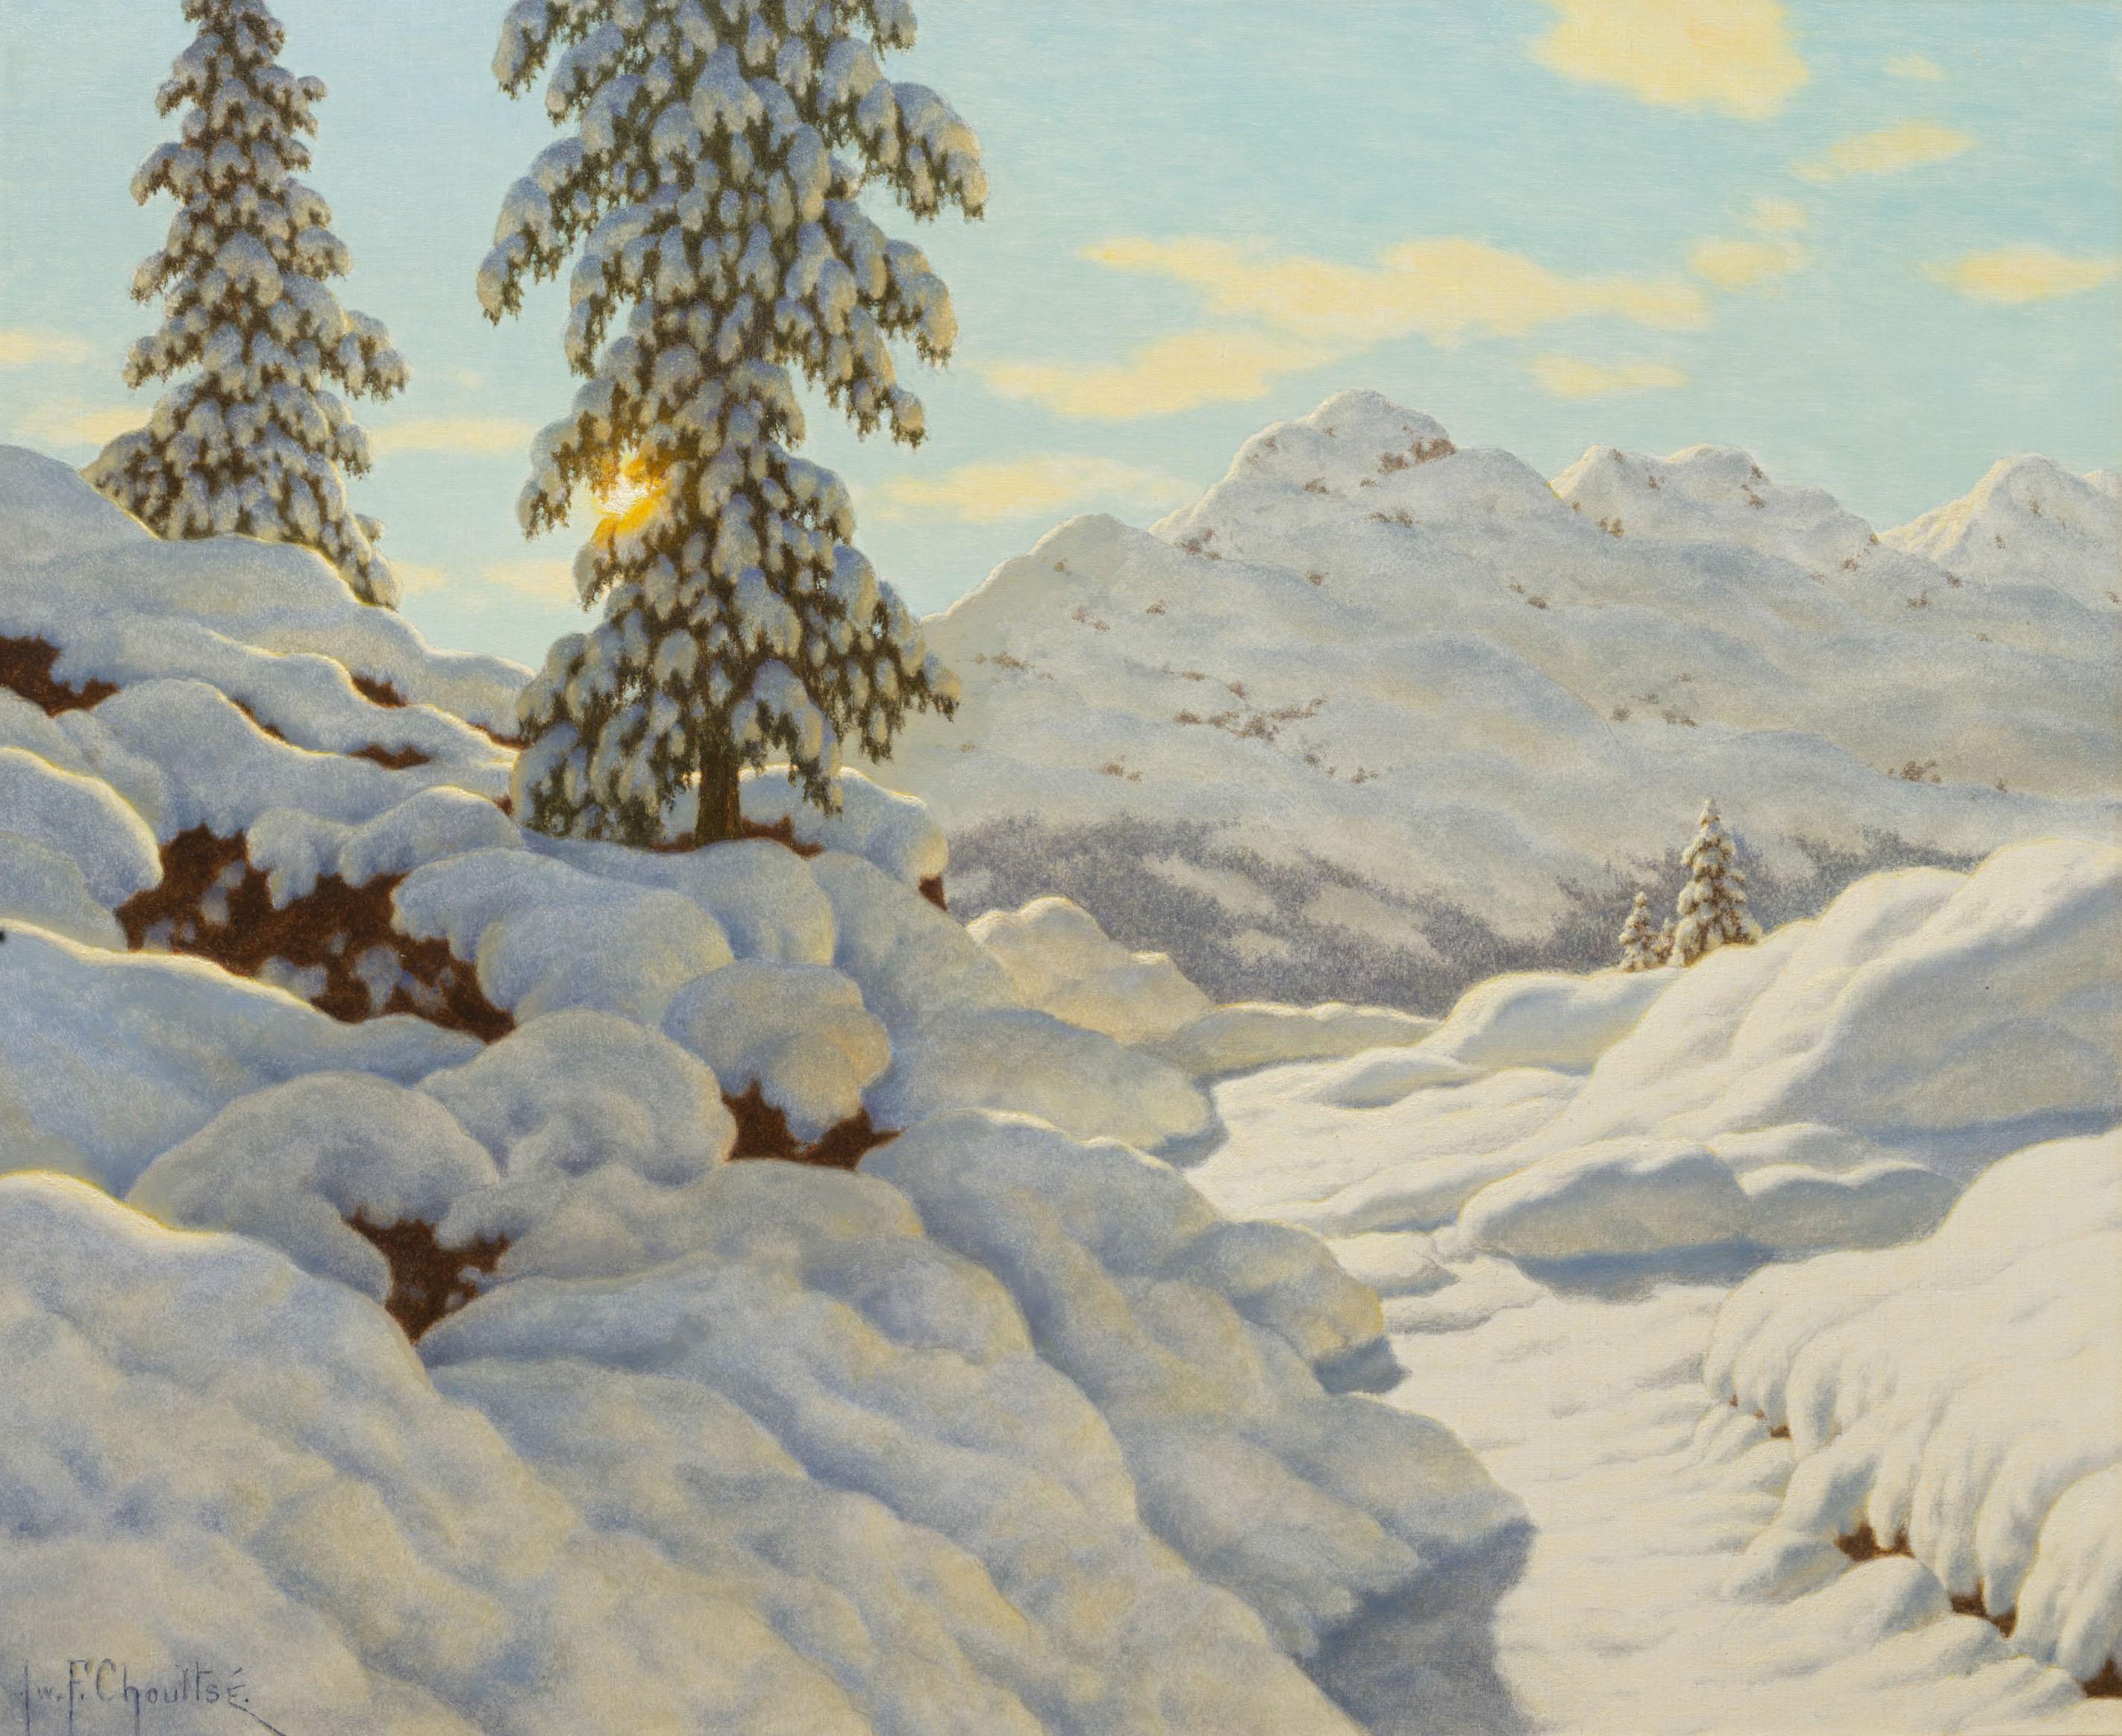 Ivan F. Choultse Landscape Painting - Soleil sur la Neige 